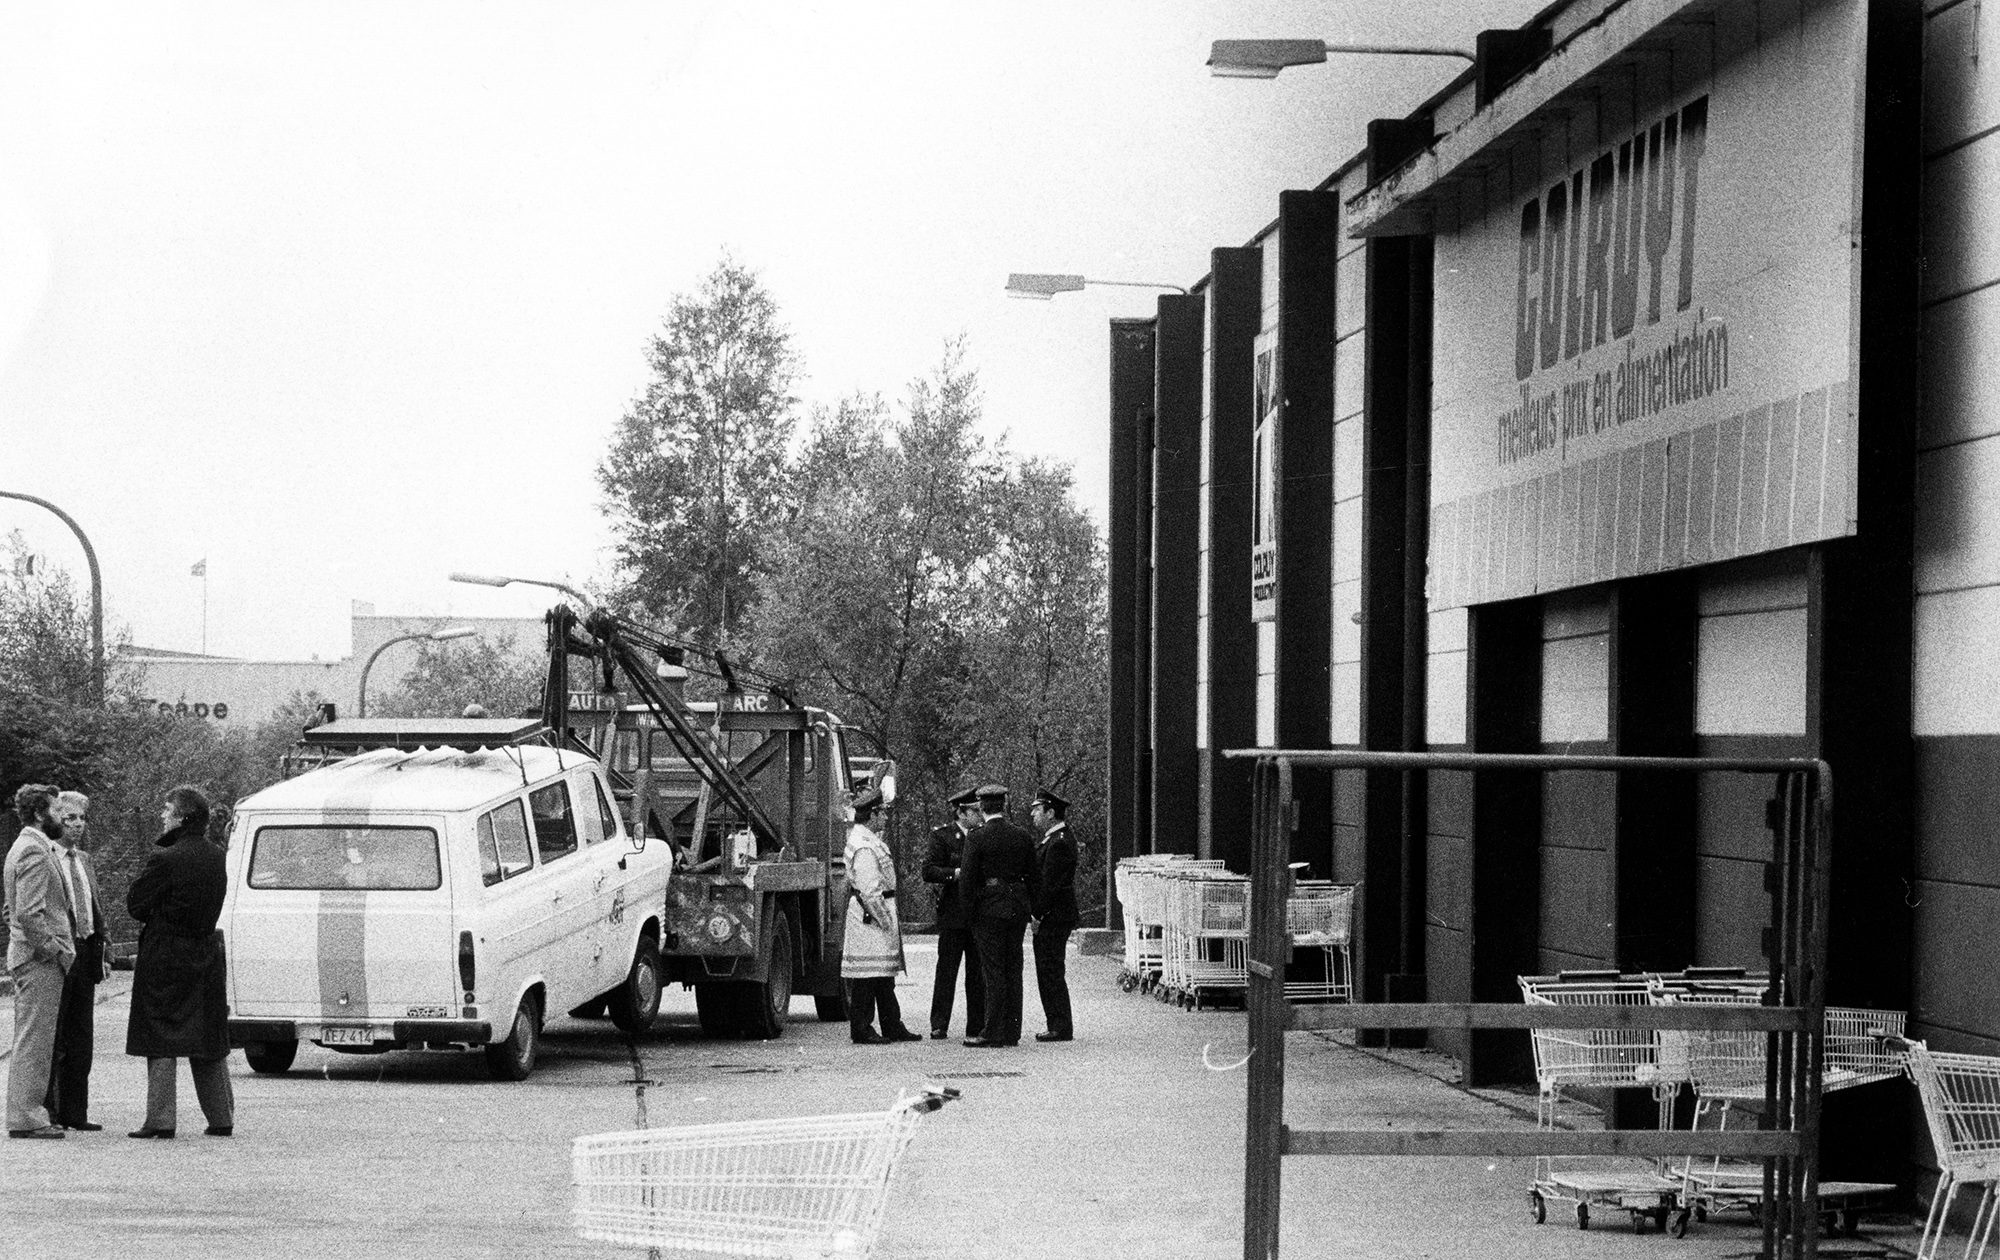 Polizisten vor dem Colruyt-Supermarkt in Nivelles am 17. September 1983